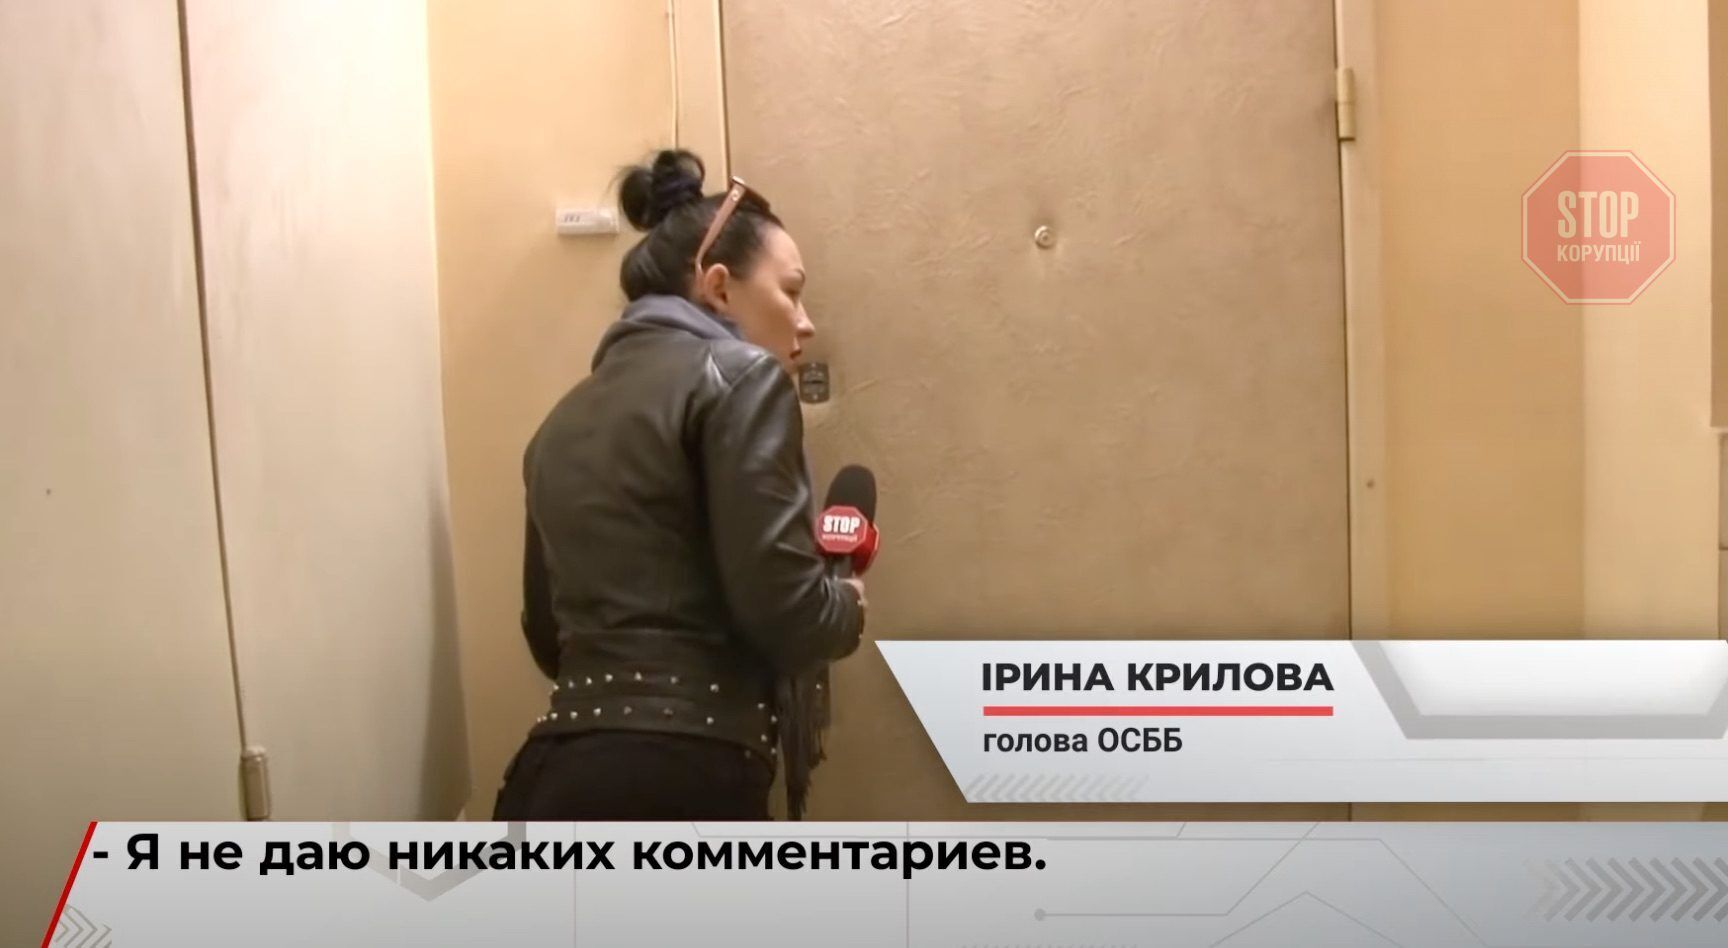  Очільниця ОСББ Ірина Крилова відмовилася давати коментарі Фото: СтопКор